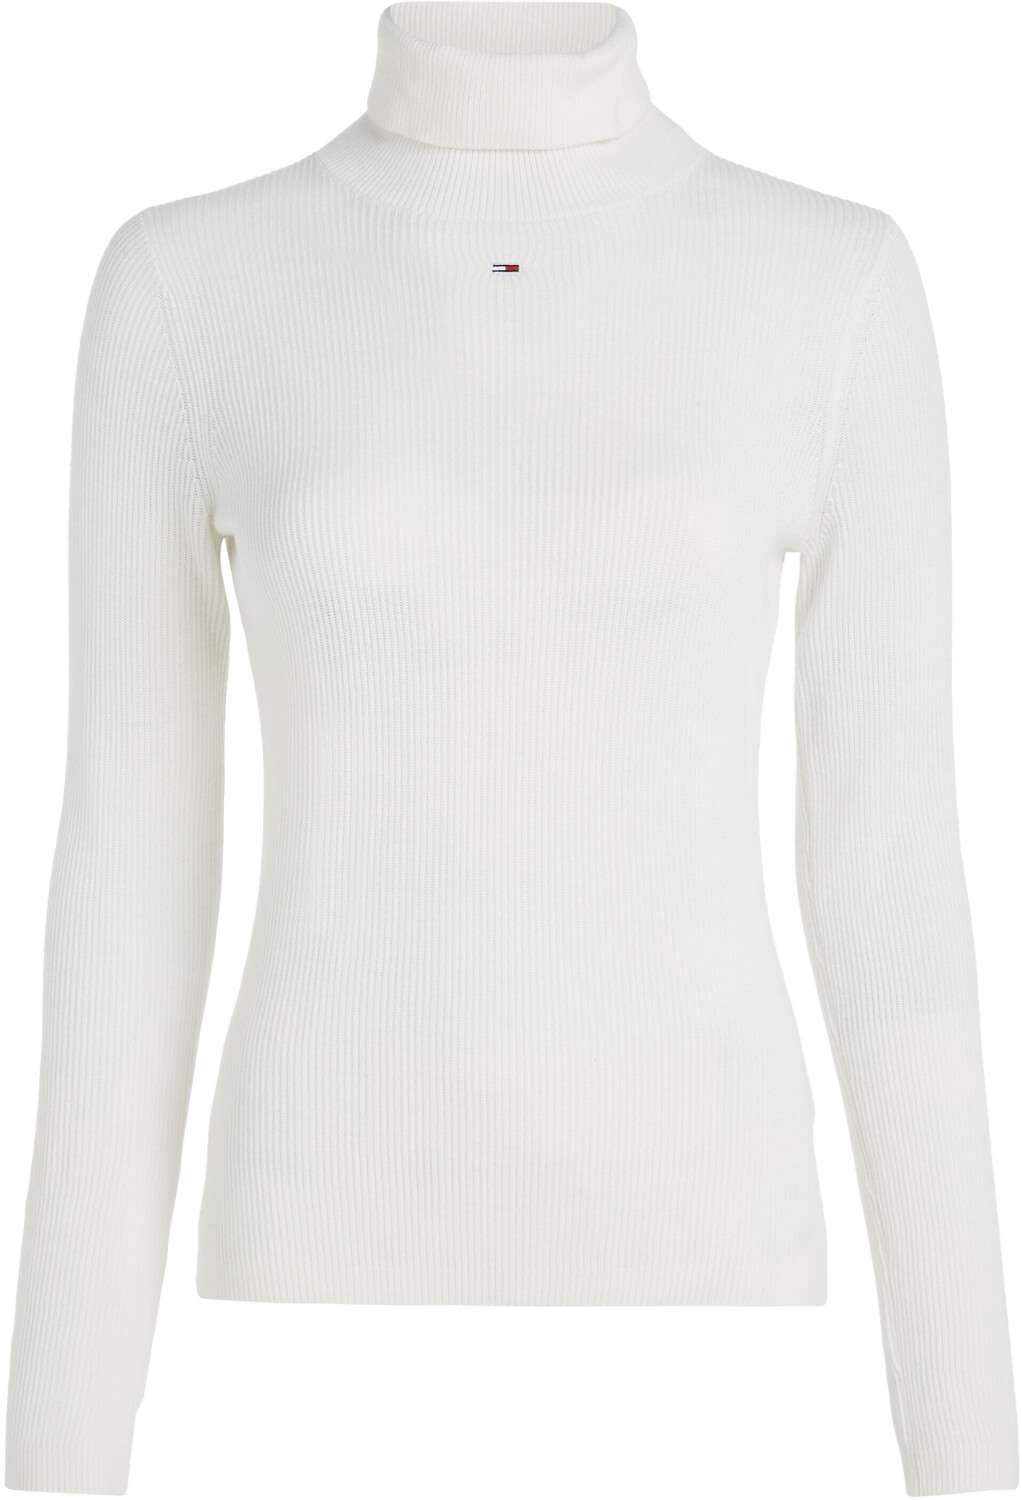 Tommy Hilfiger Essential Turtleneck bei Preisvergleich (DW0DW16537) ancient | white 59,99 € Sweater ab